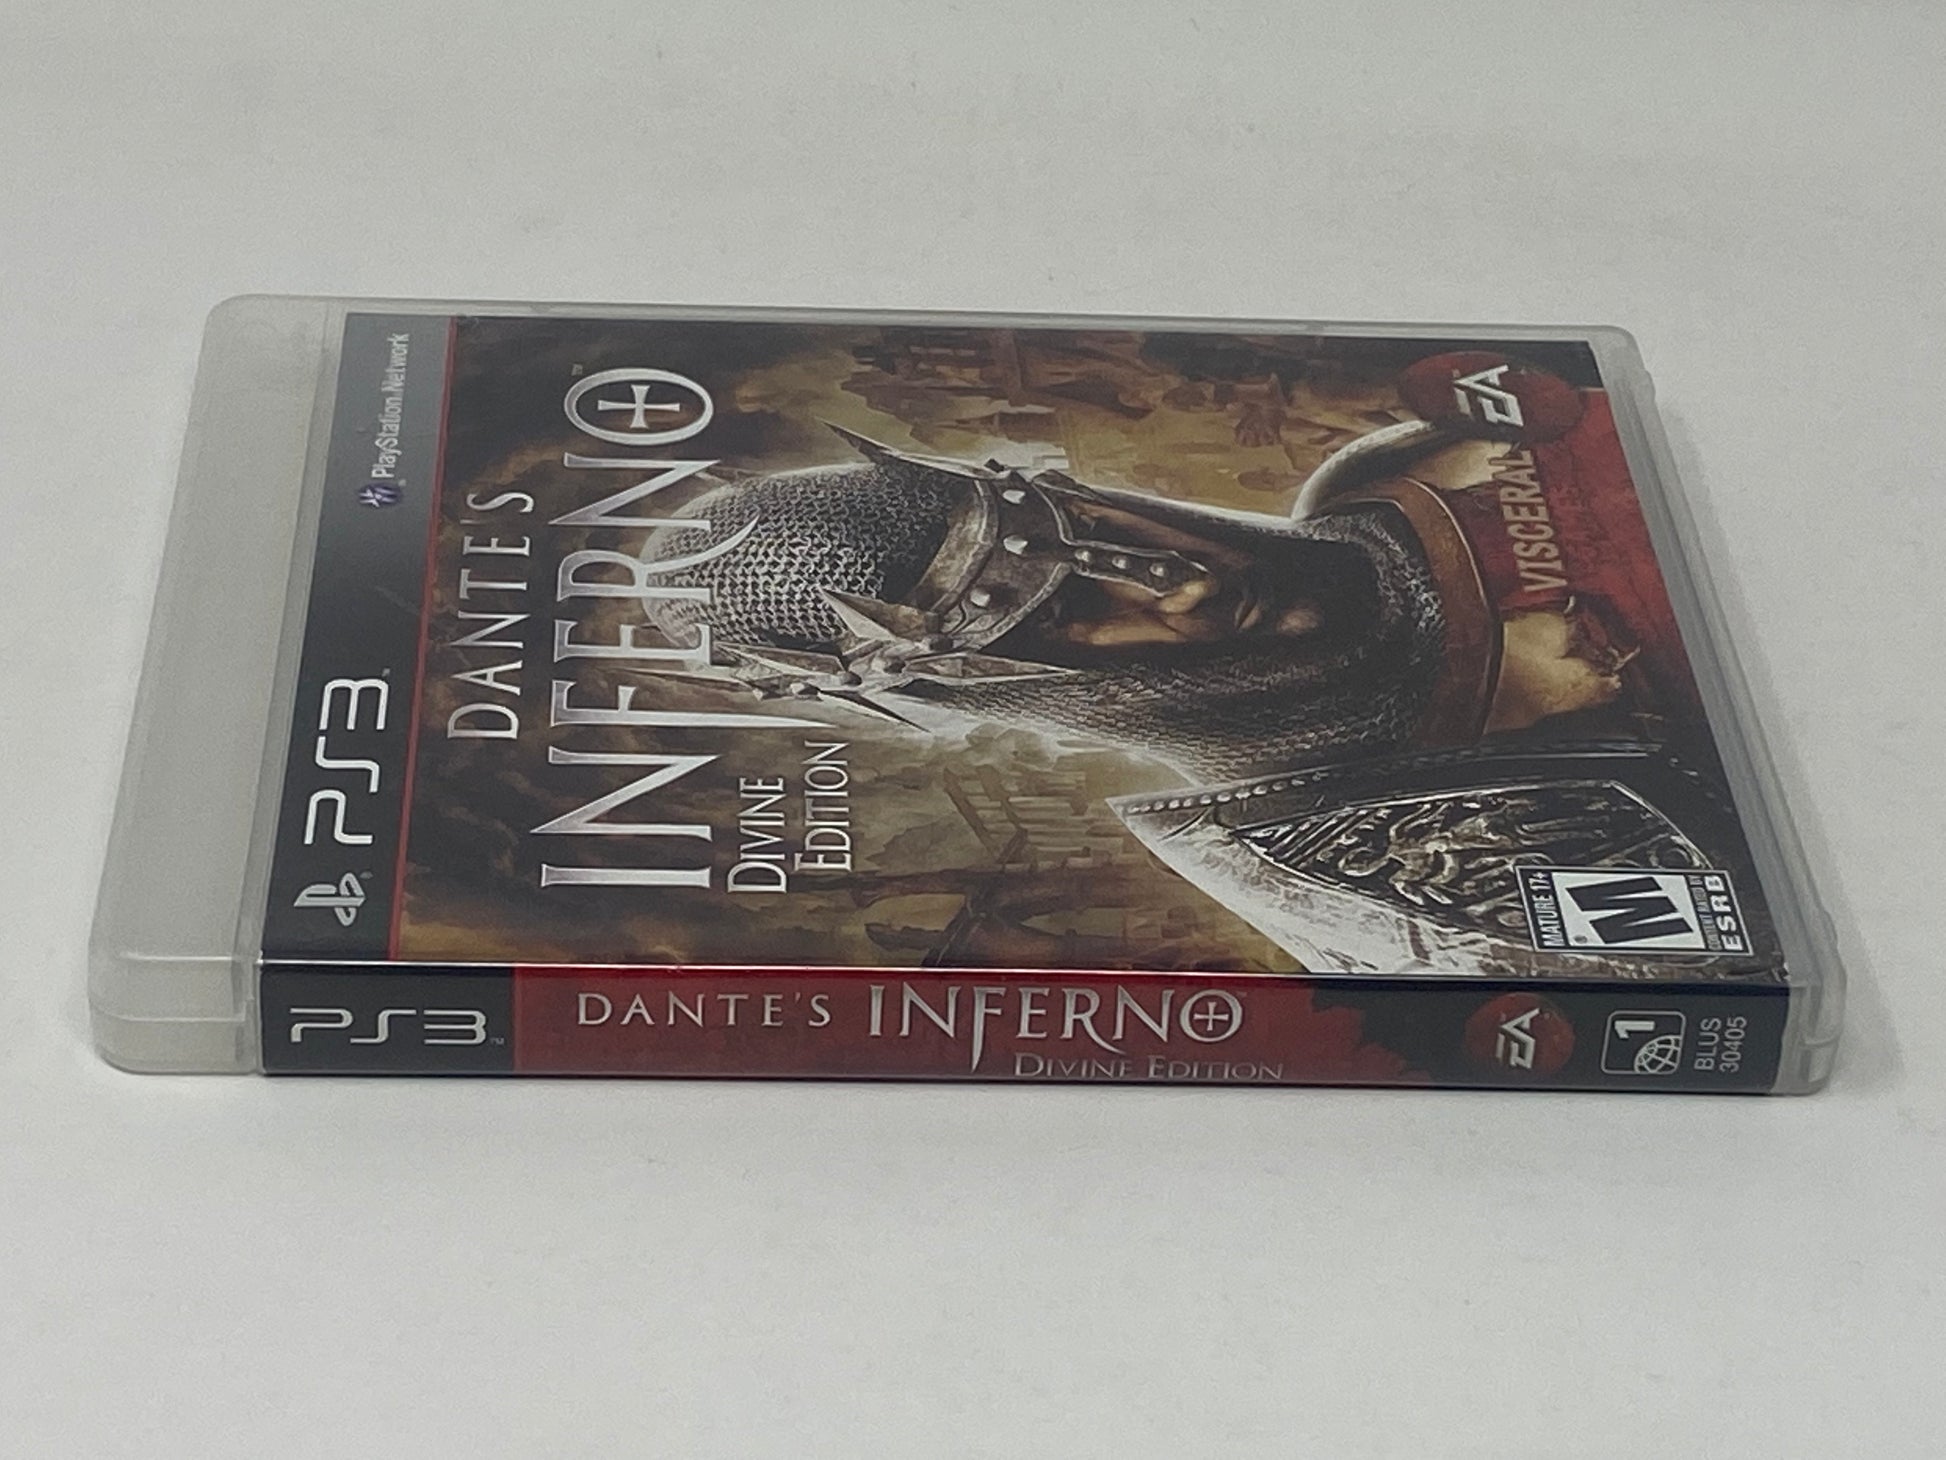 PS3 - Dante's Inferno (USADO)